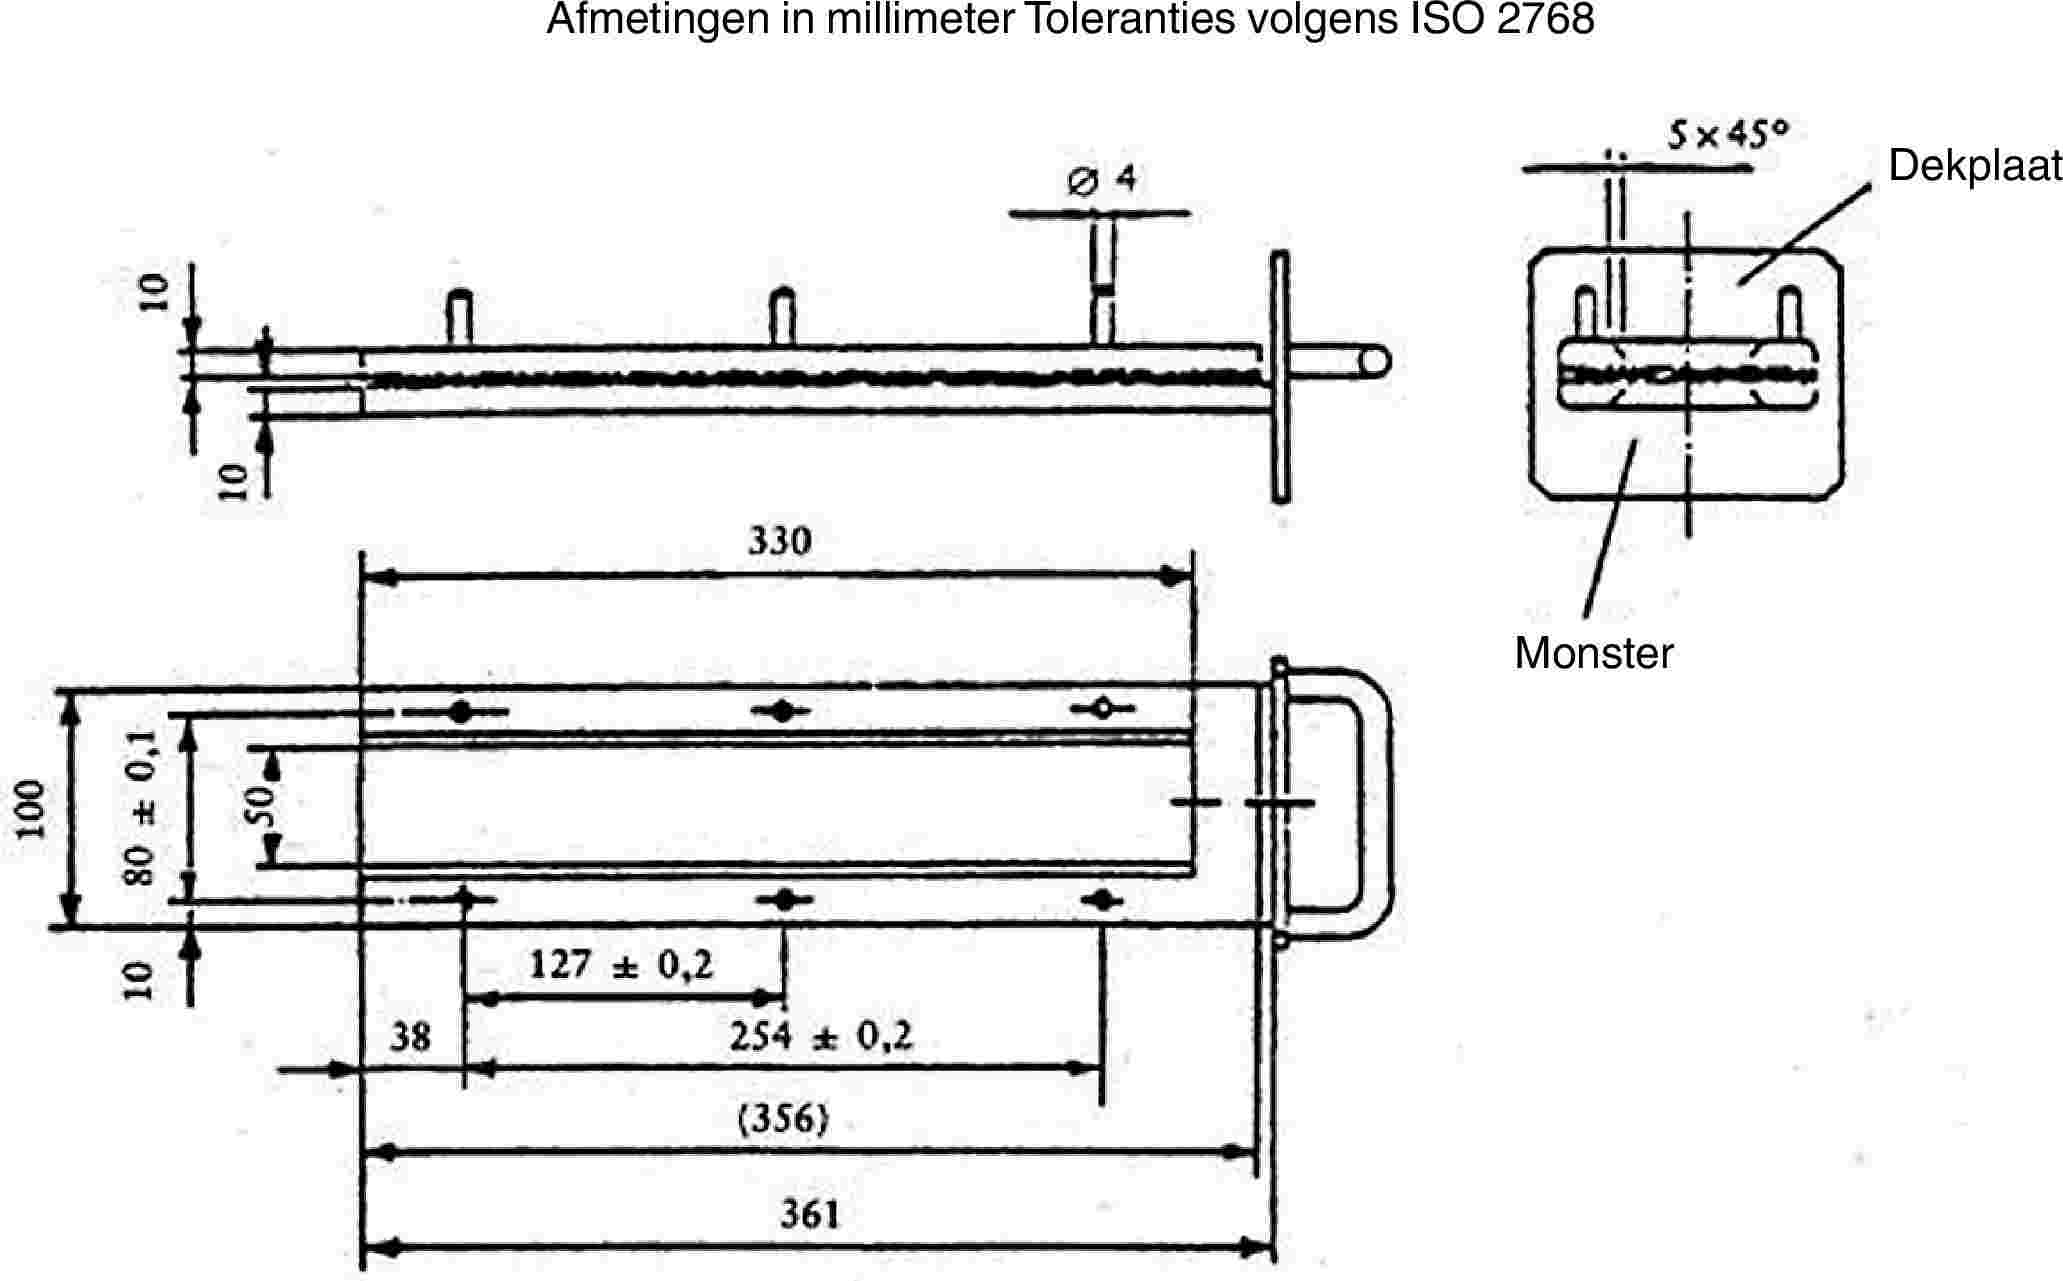 Afmetingen in millimeter Toleranties volgens ISO 2768DekplaatMonster